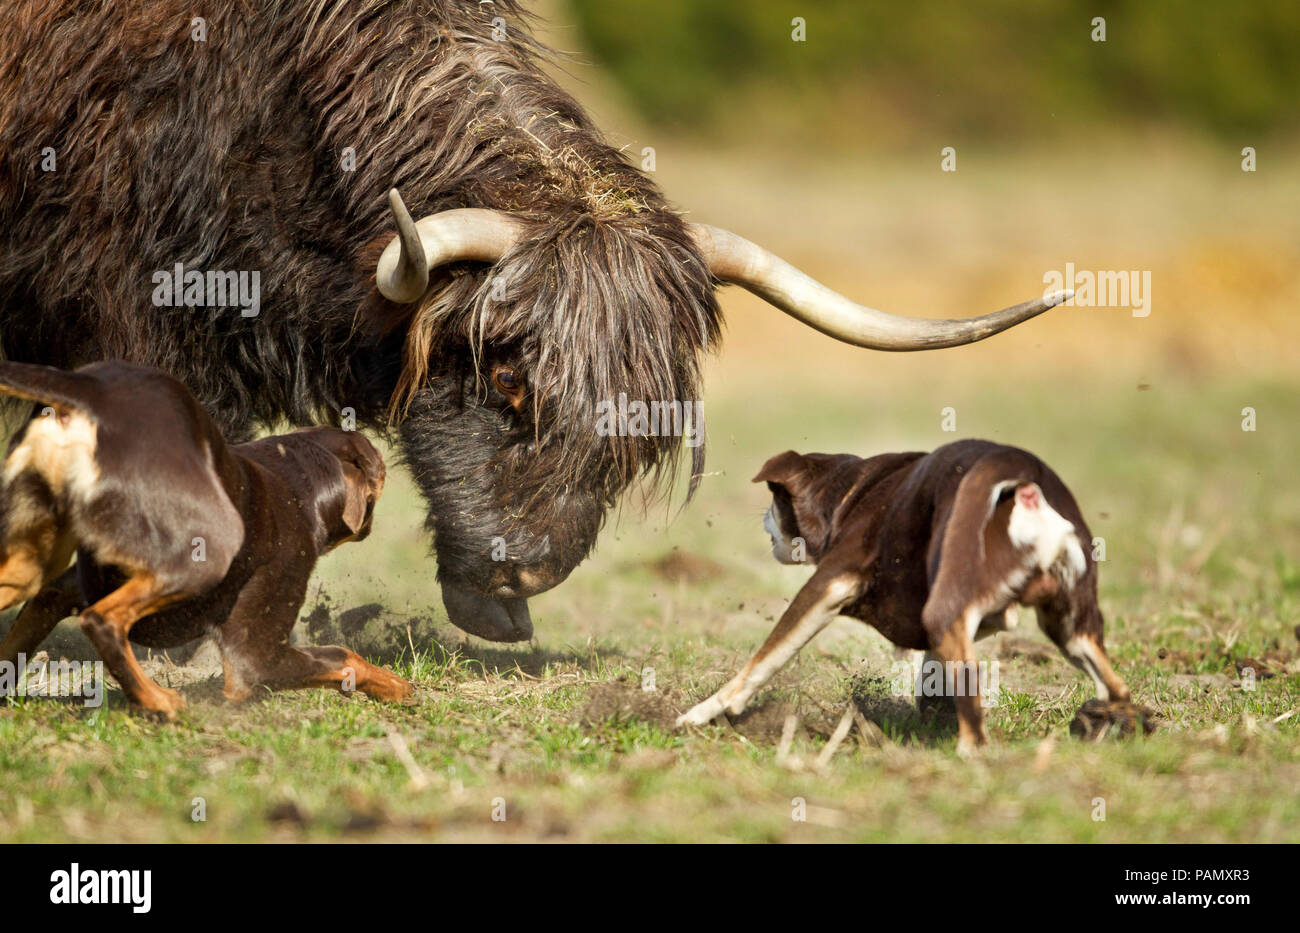 Australian Kelpie de travail. Deux chiens adultes des troupeaux bovins (Highland cattle ?). Basse-saxe, Allemagne. Banque D'Images